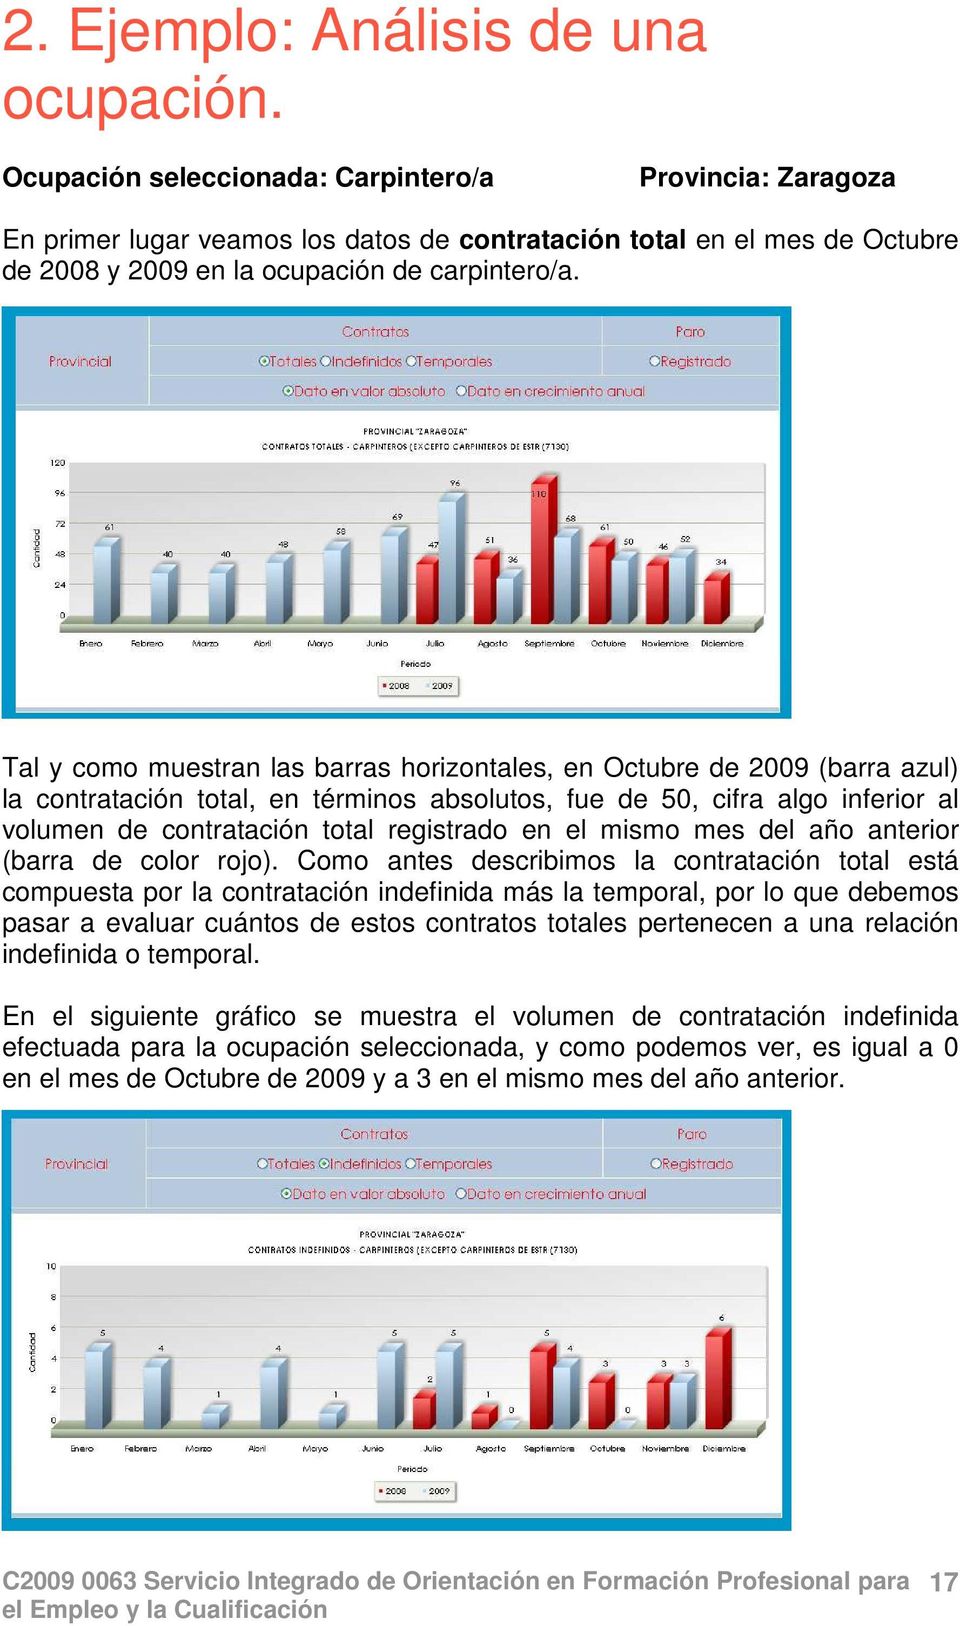 Tal y como muestran las barras horizontales, en Octubre de 2009 (barra azul) la contratación total, en términos absolutos, fue de 50, cifra algo inferior al volumen de contratación total registrado